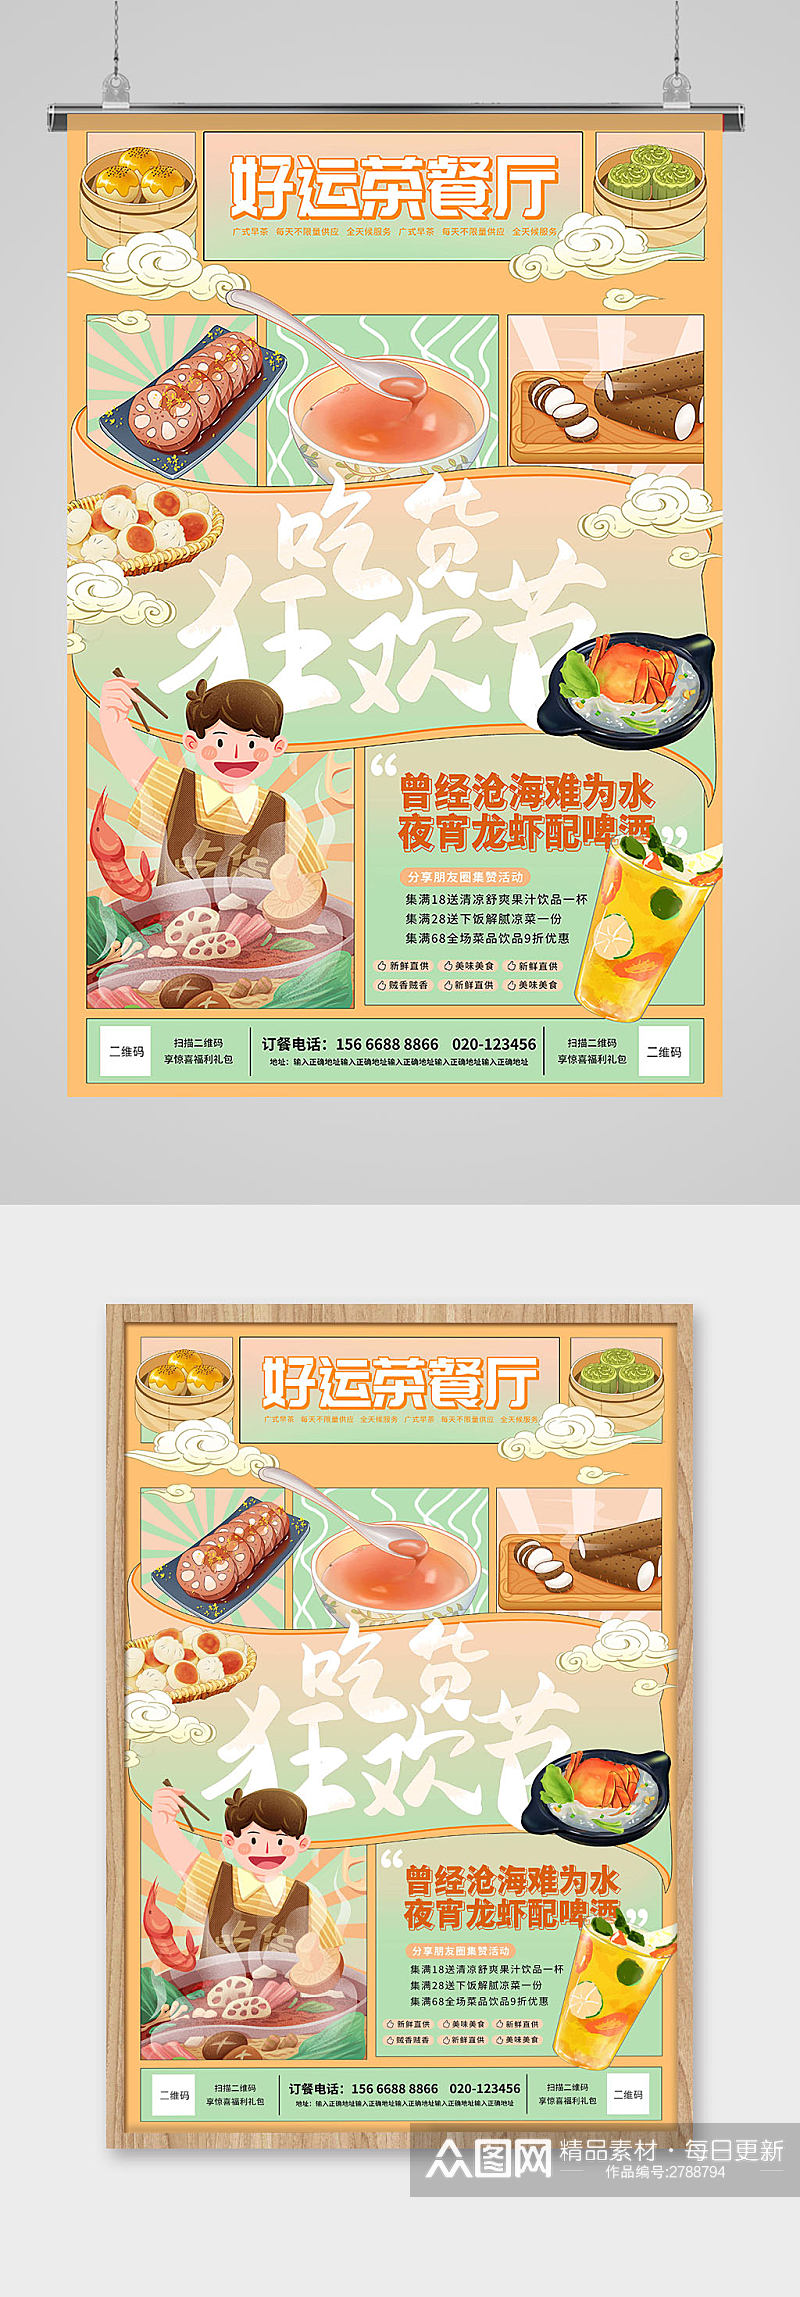 广式茶餐厅早茶早点吃货狂欢节海报素材